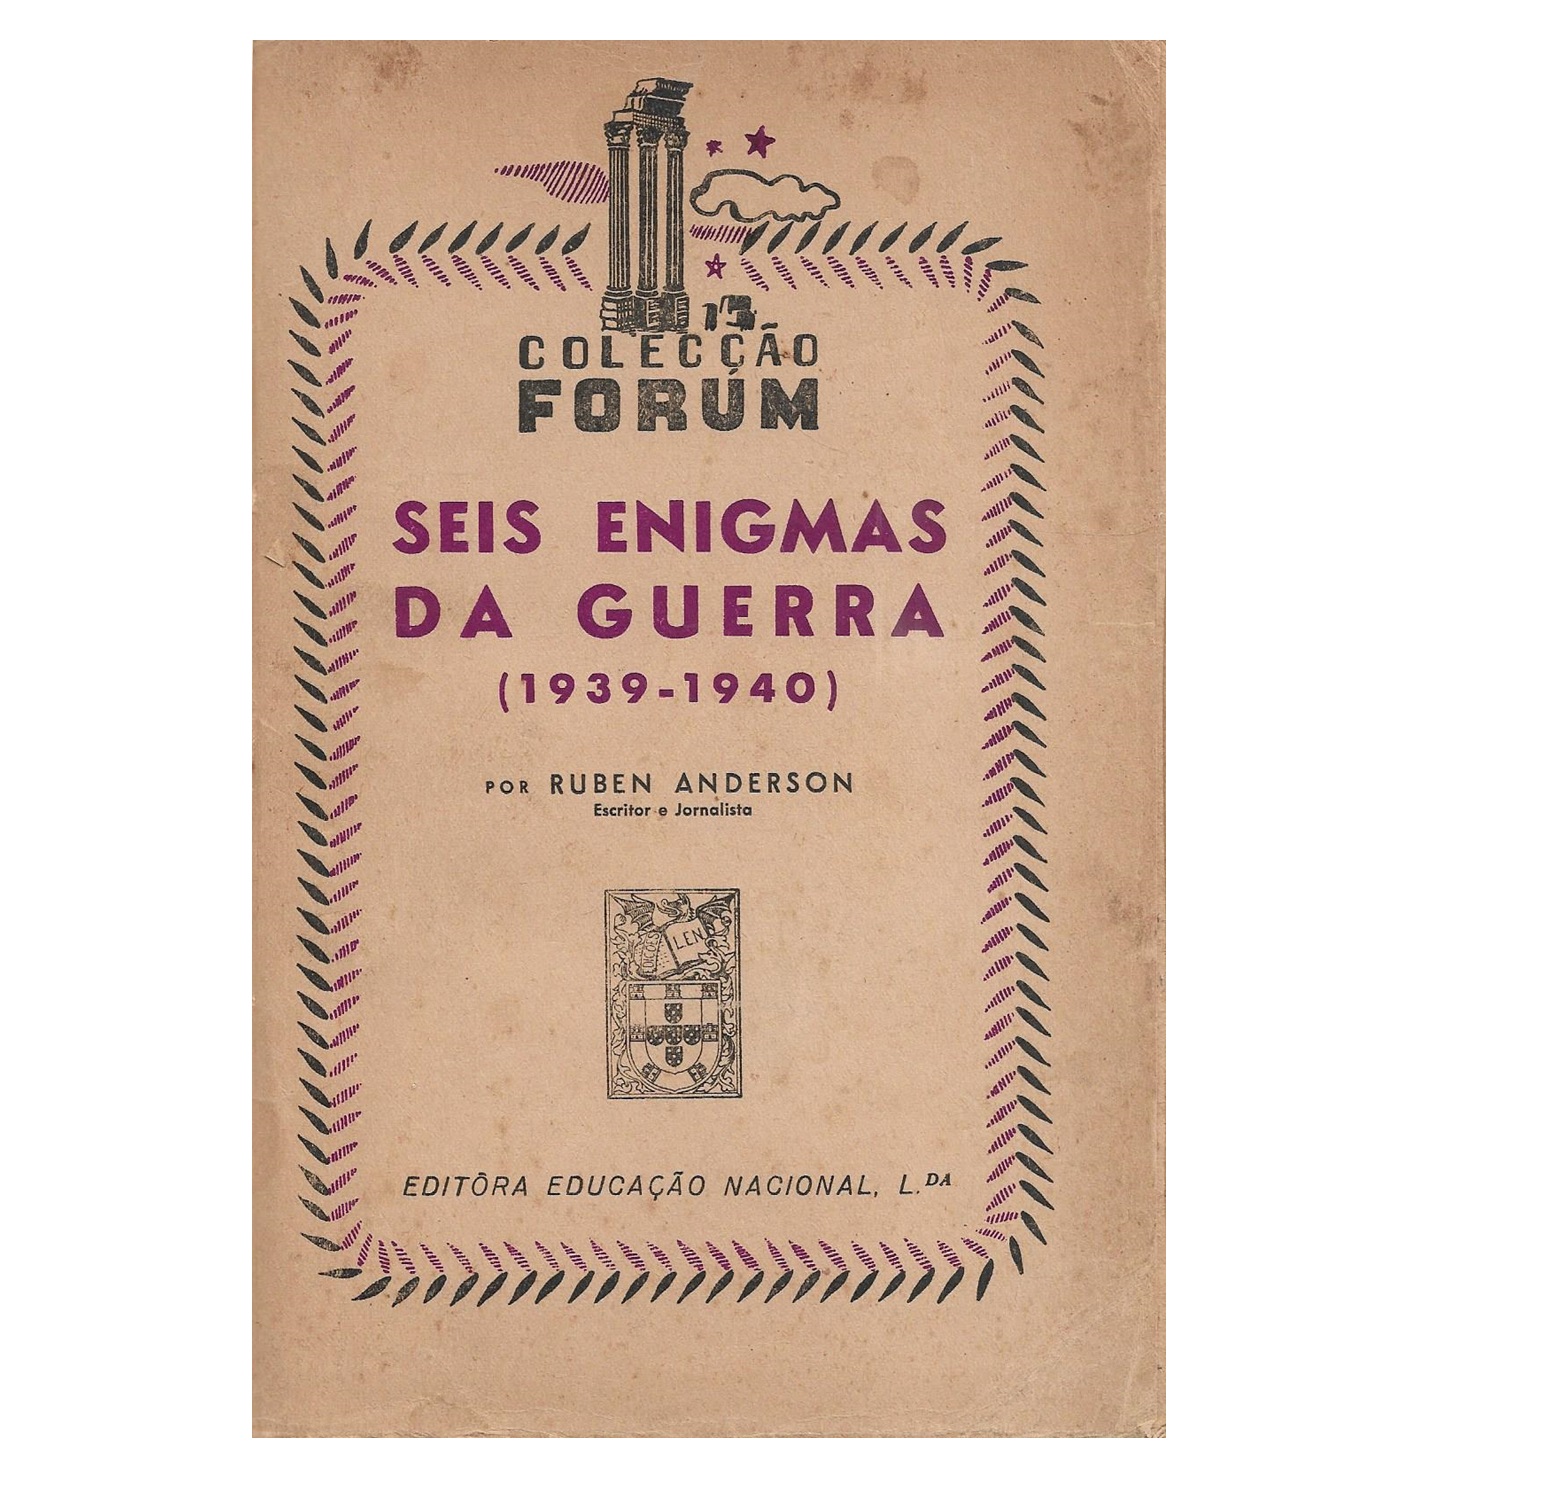  SEIS ENIGMAS DA GUERRA: 1939-1940.